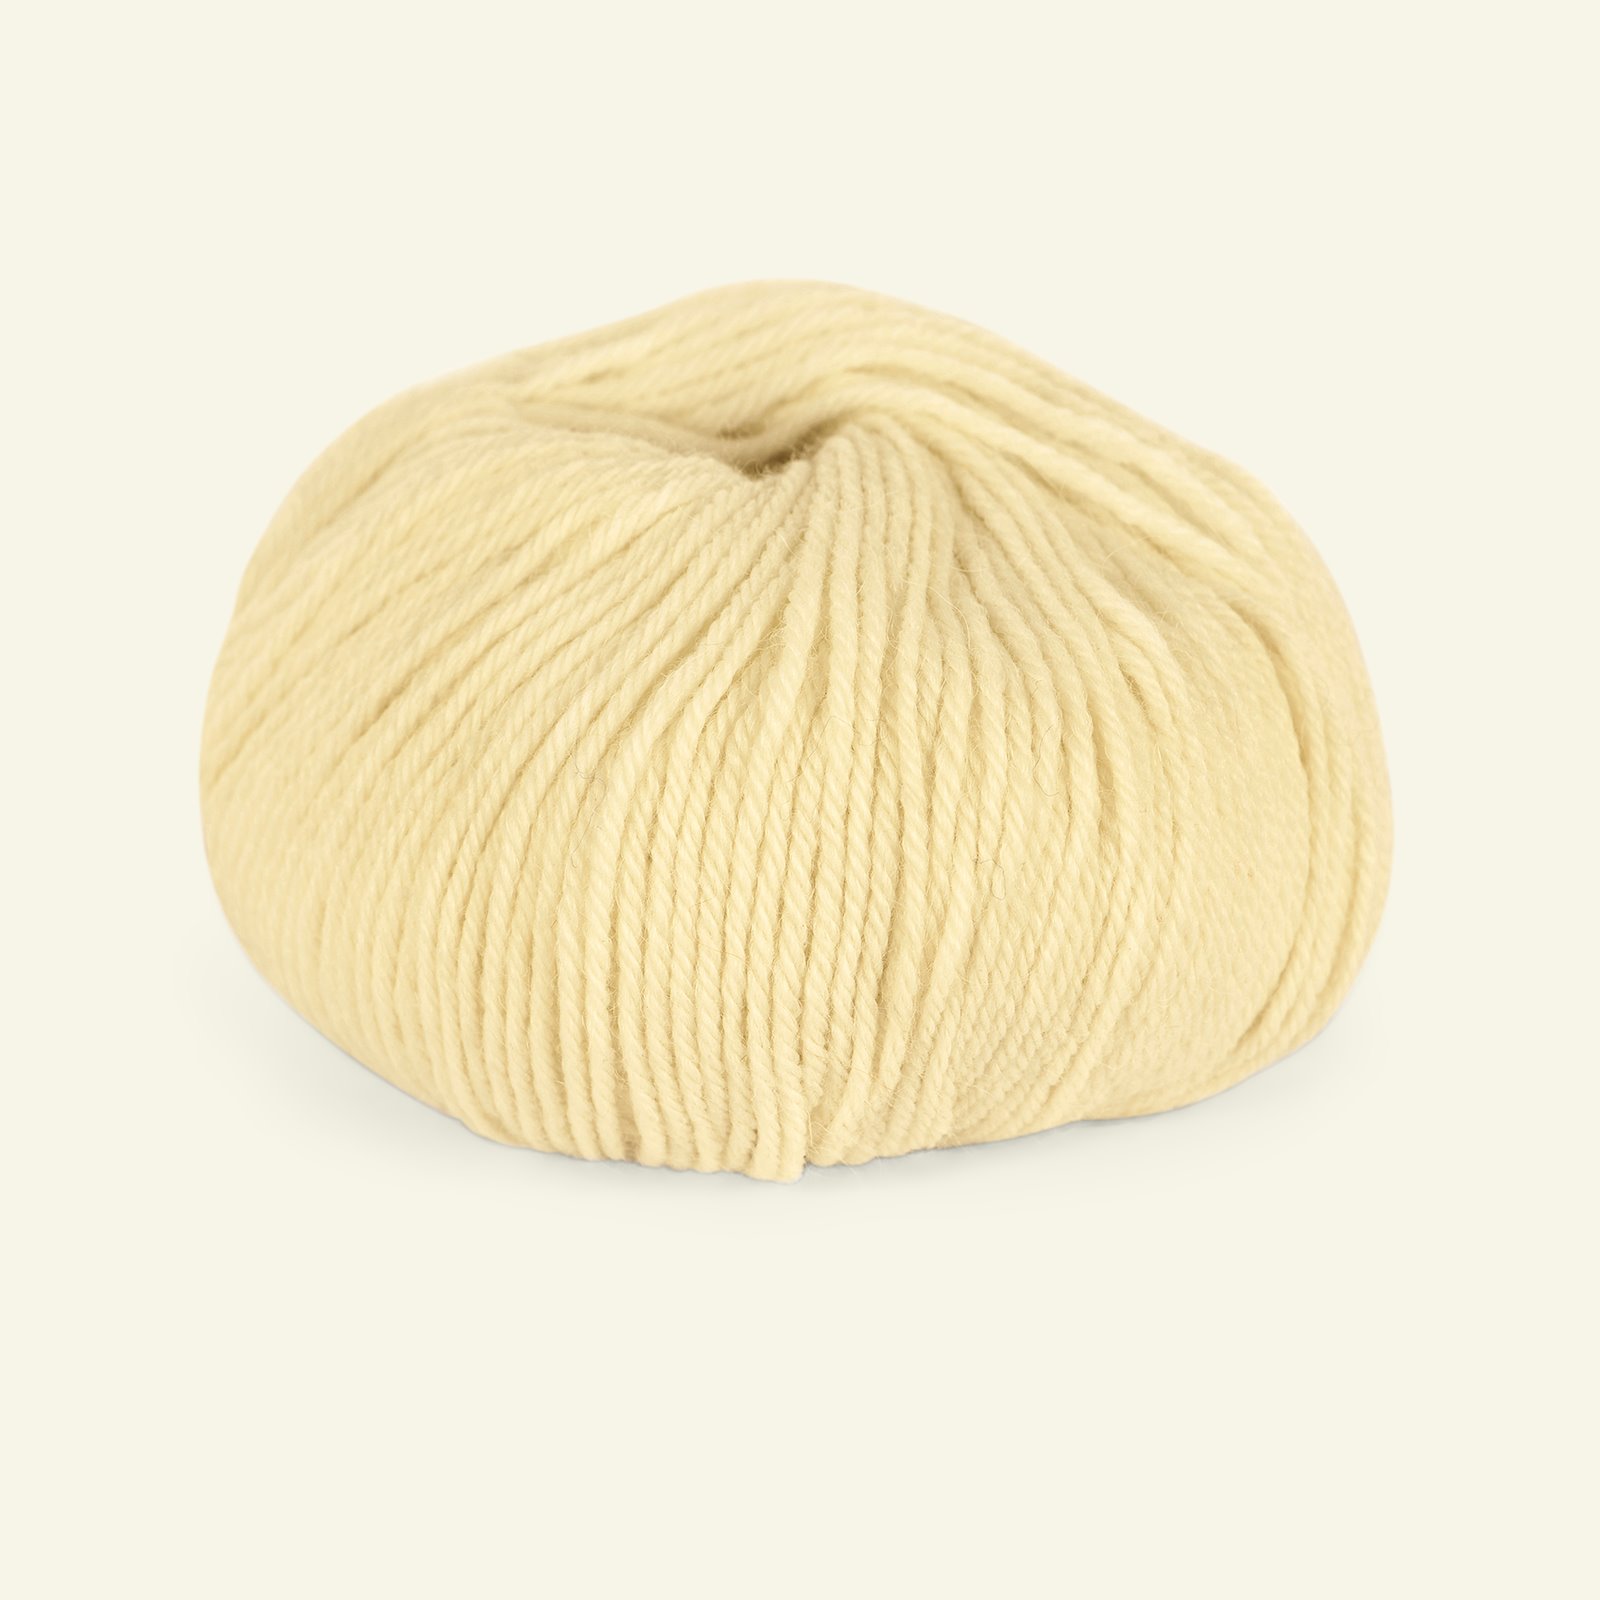 Du Store Alpakka, alpaca merino mixed yarn "Sterk", light yellow (913) 90000705_pack_b